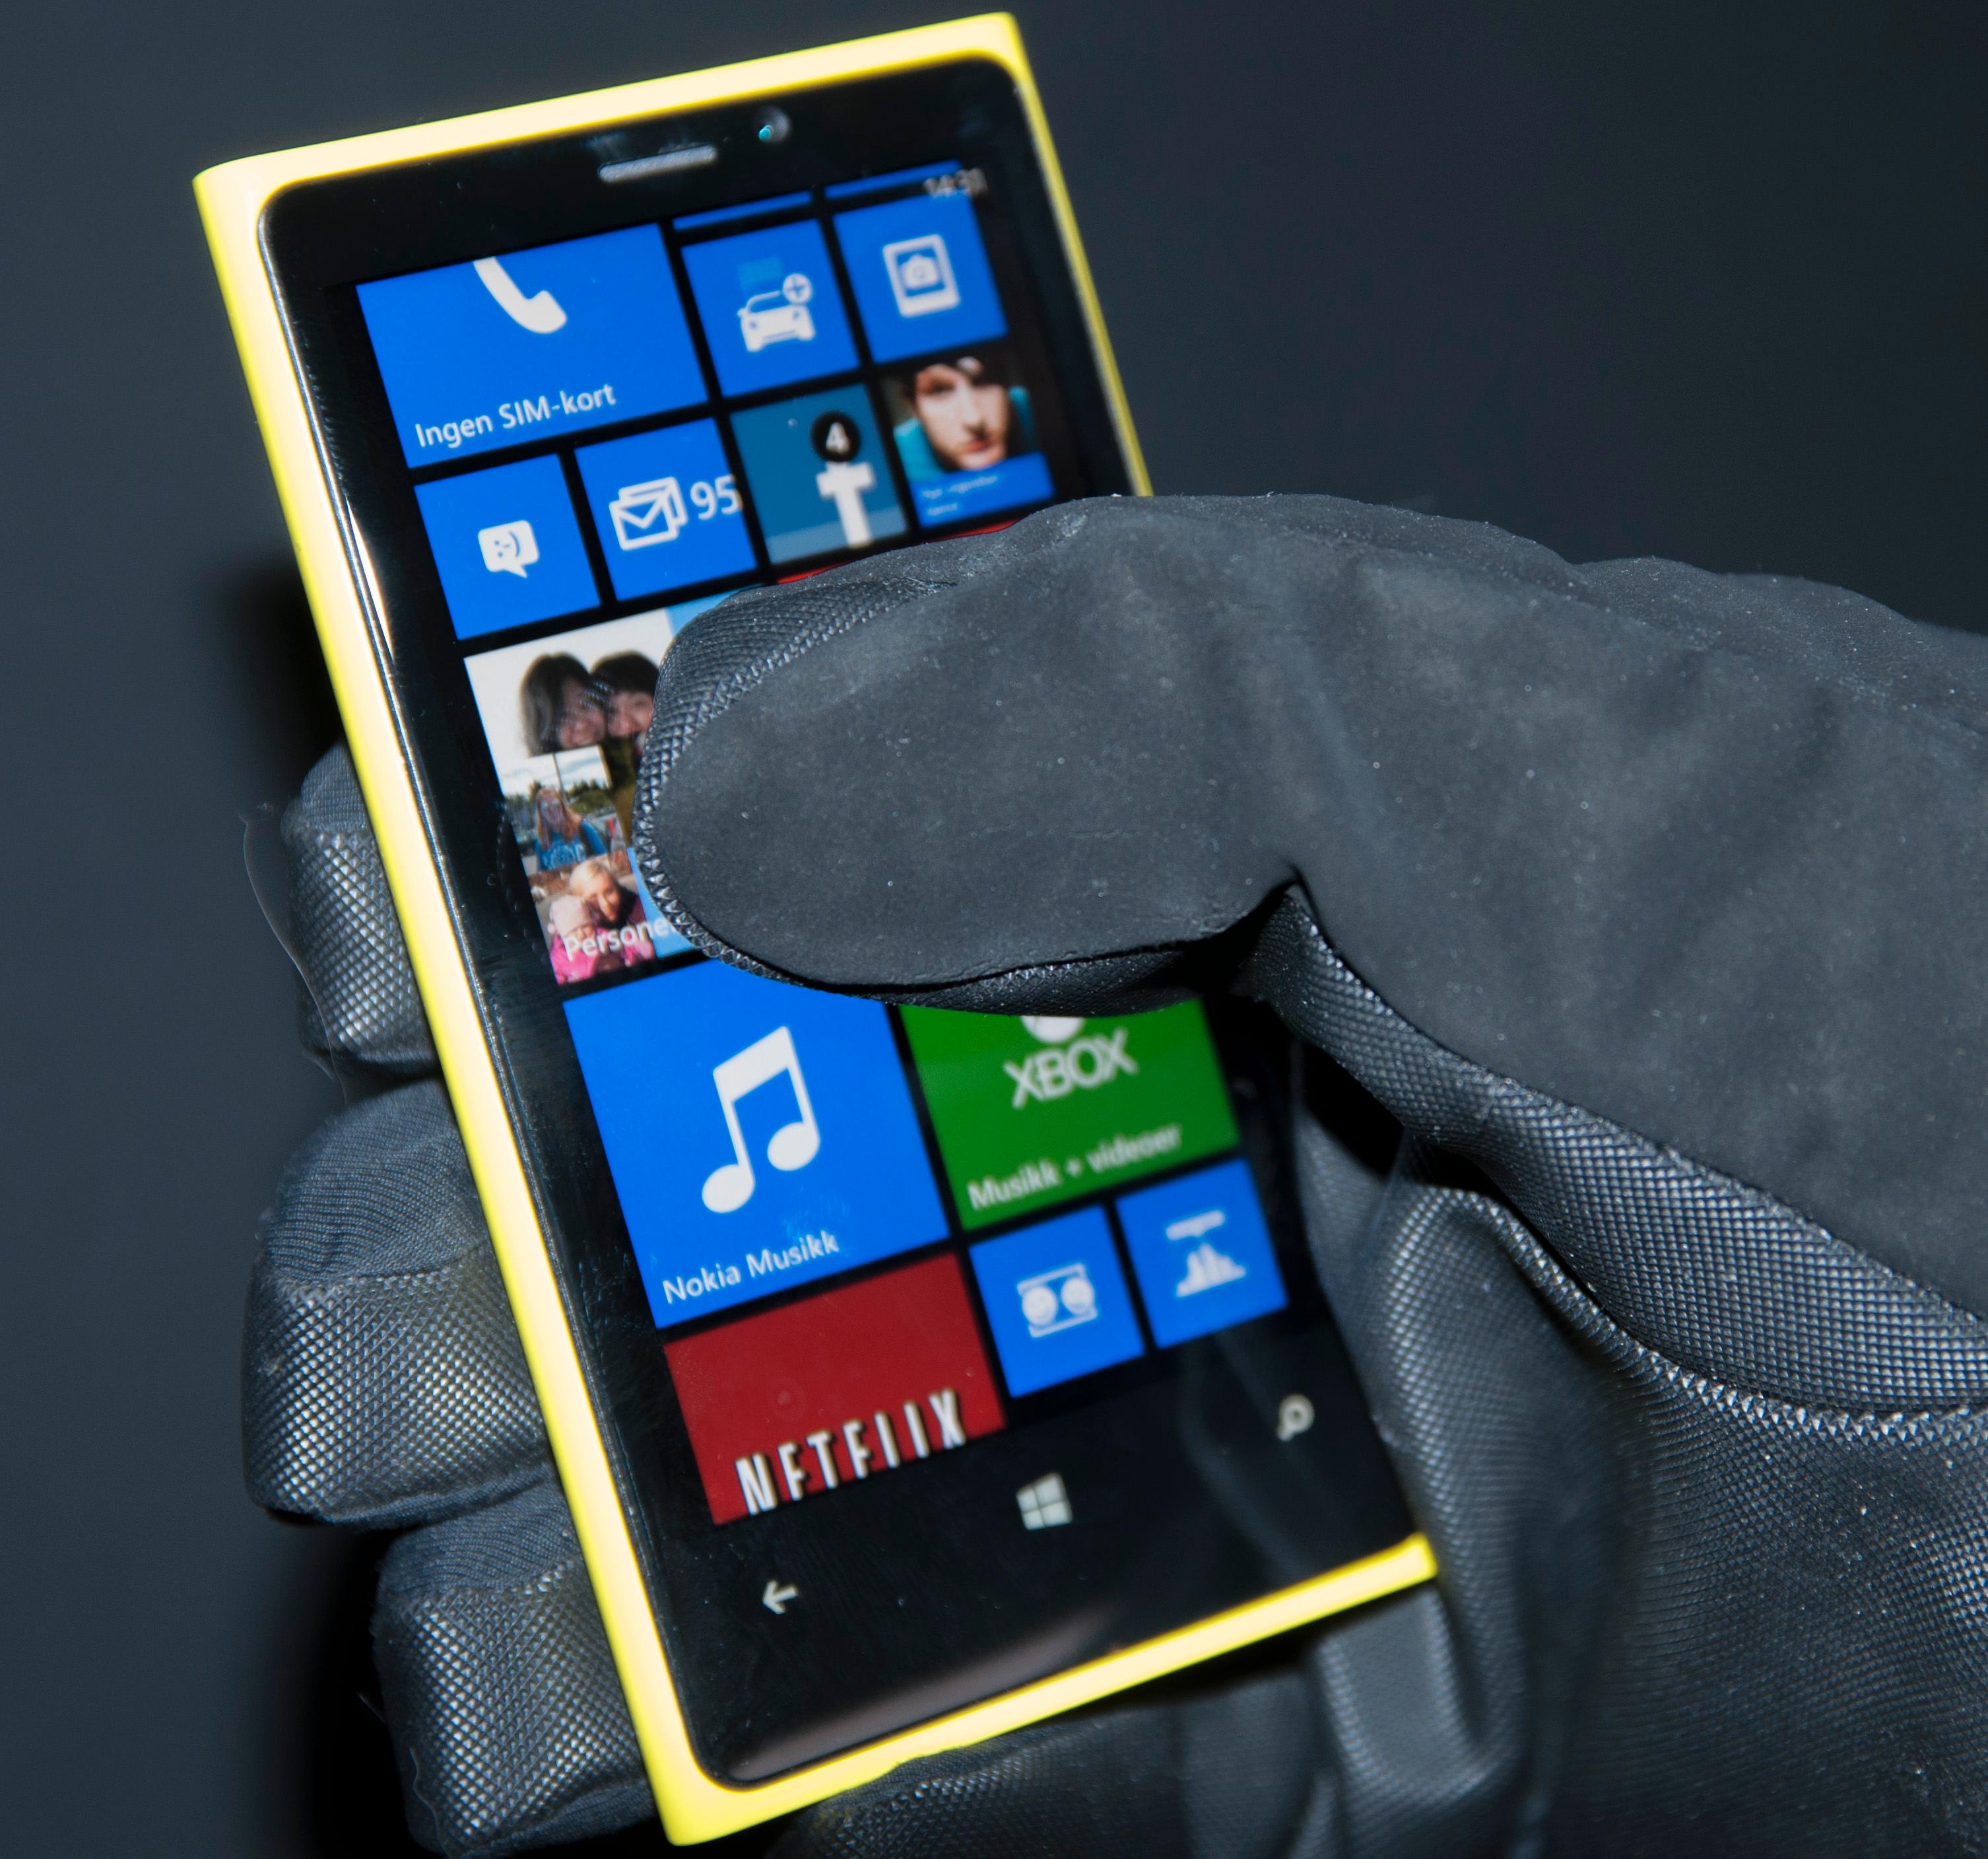 Nokia er tilbake, men juryen er fortsatt ute. Det er lenge siden én enkelt mobiltelefon har vært like proppet av ny teknologi som det Lumia 920 er. Nå må den bare selge litt før finnene kan si seg fornøyde.Foto: Finn Jarle Kvalheim, Amobil.no